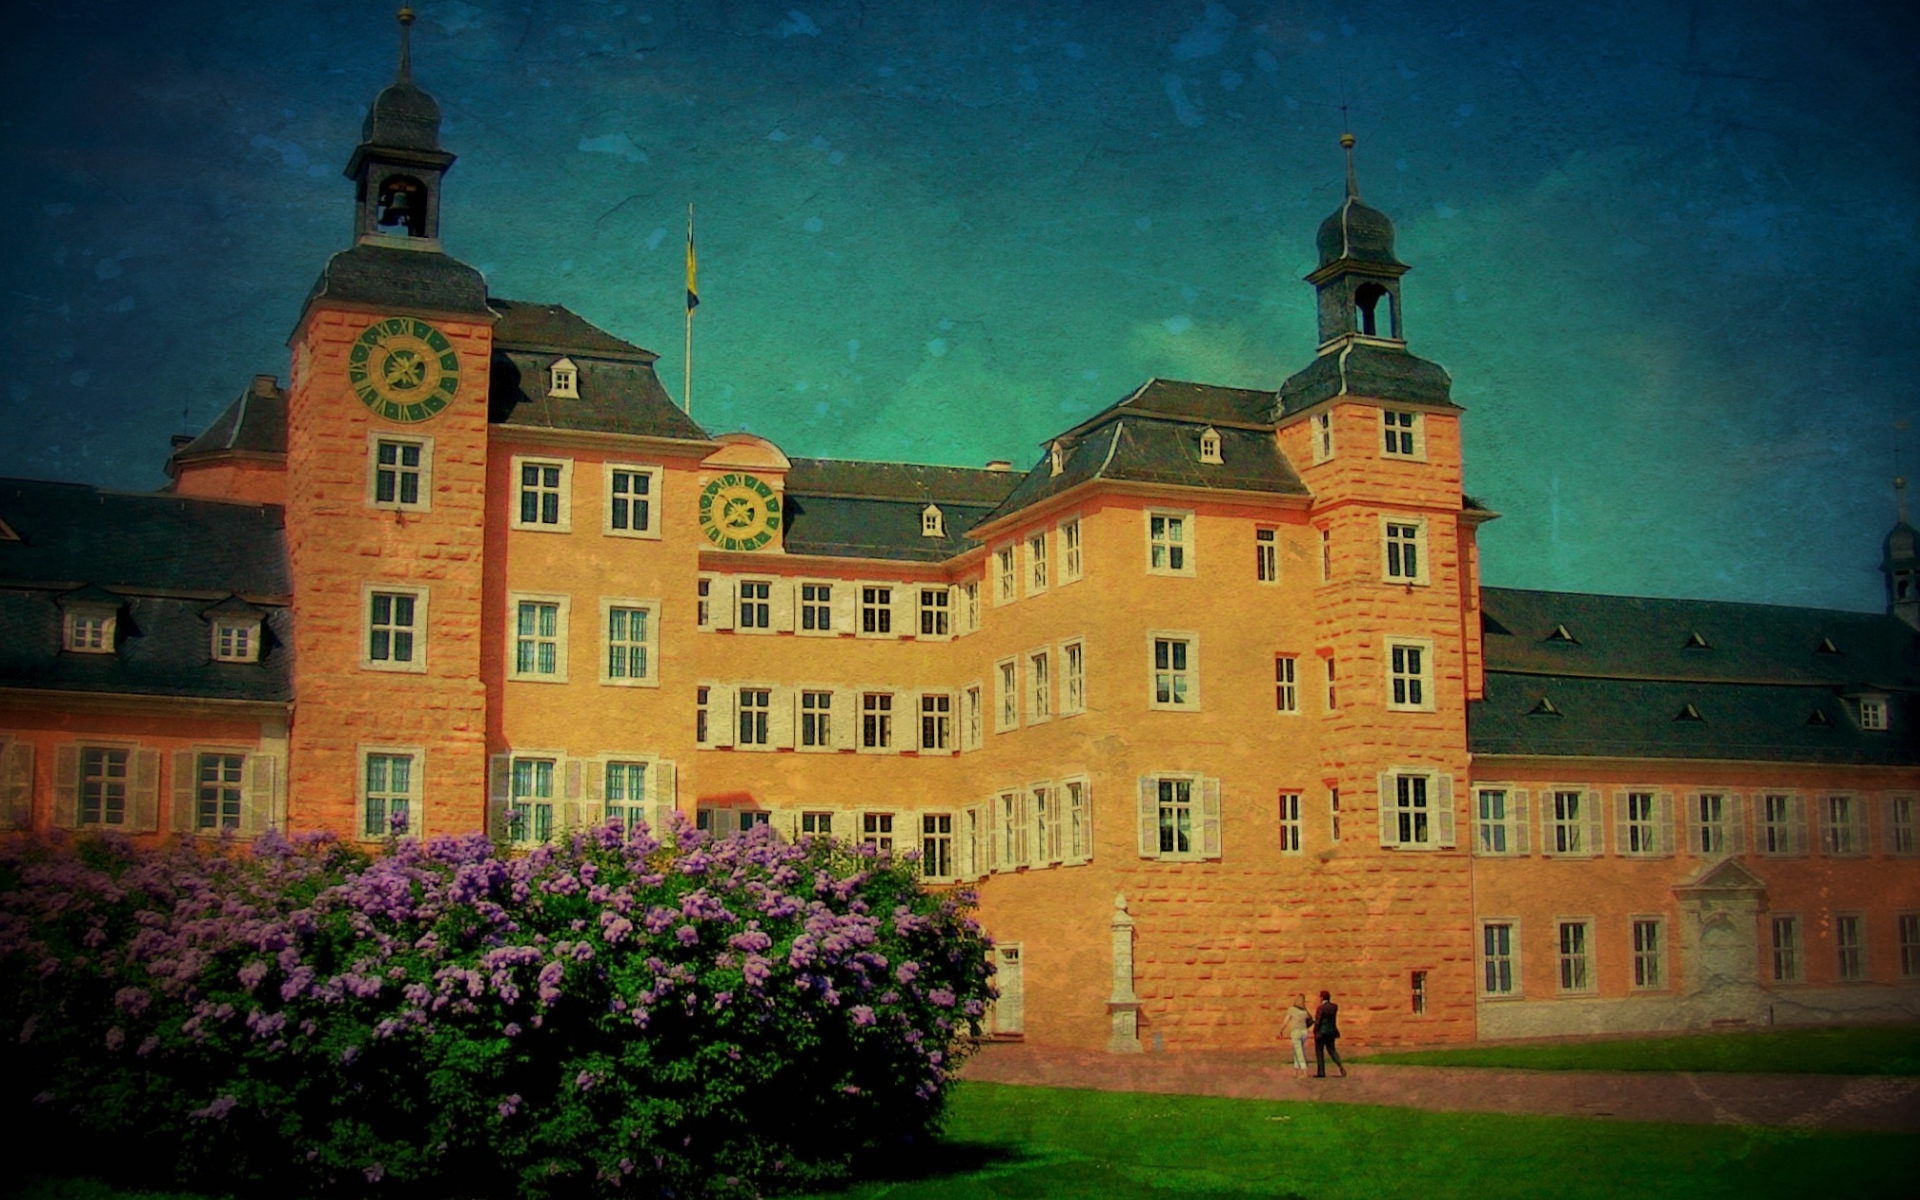 Man Made Schwetzingen Palace HD Wallpaper | Background Image